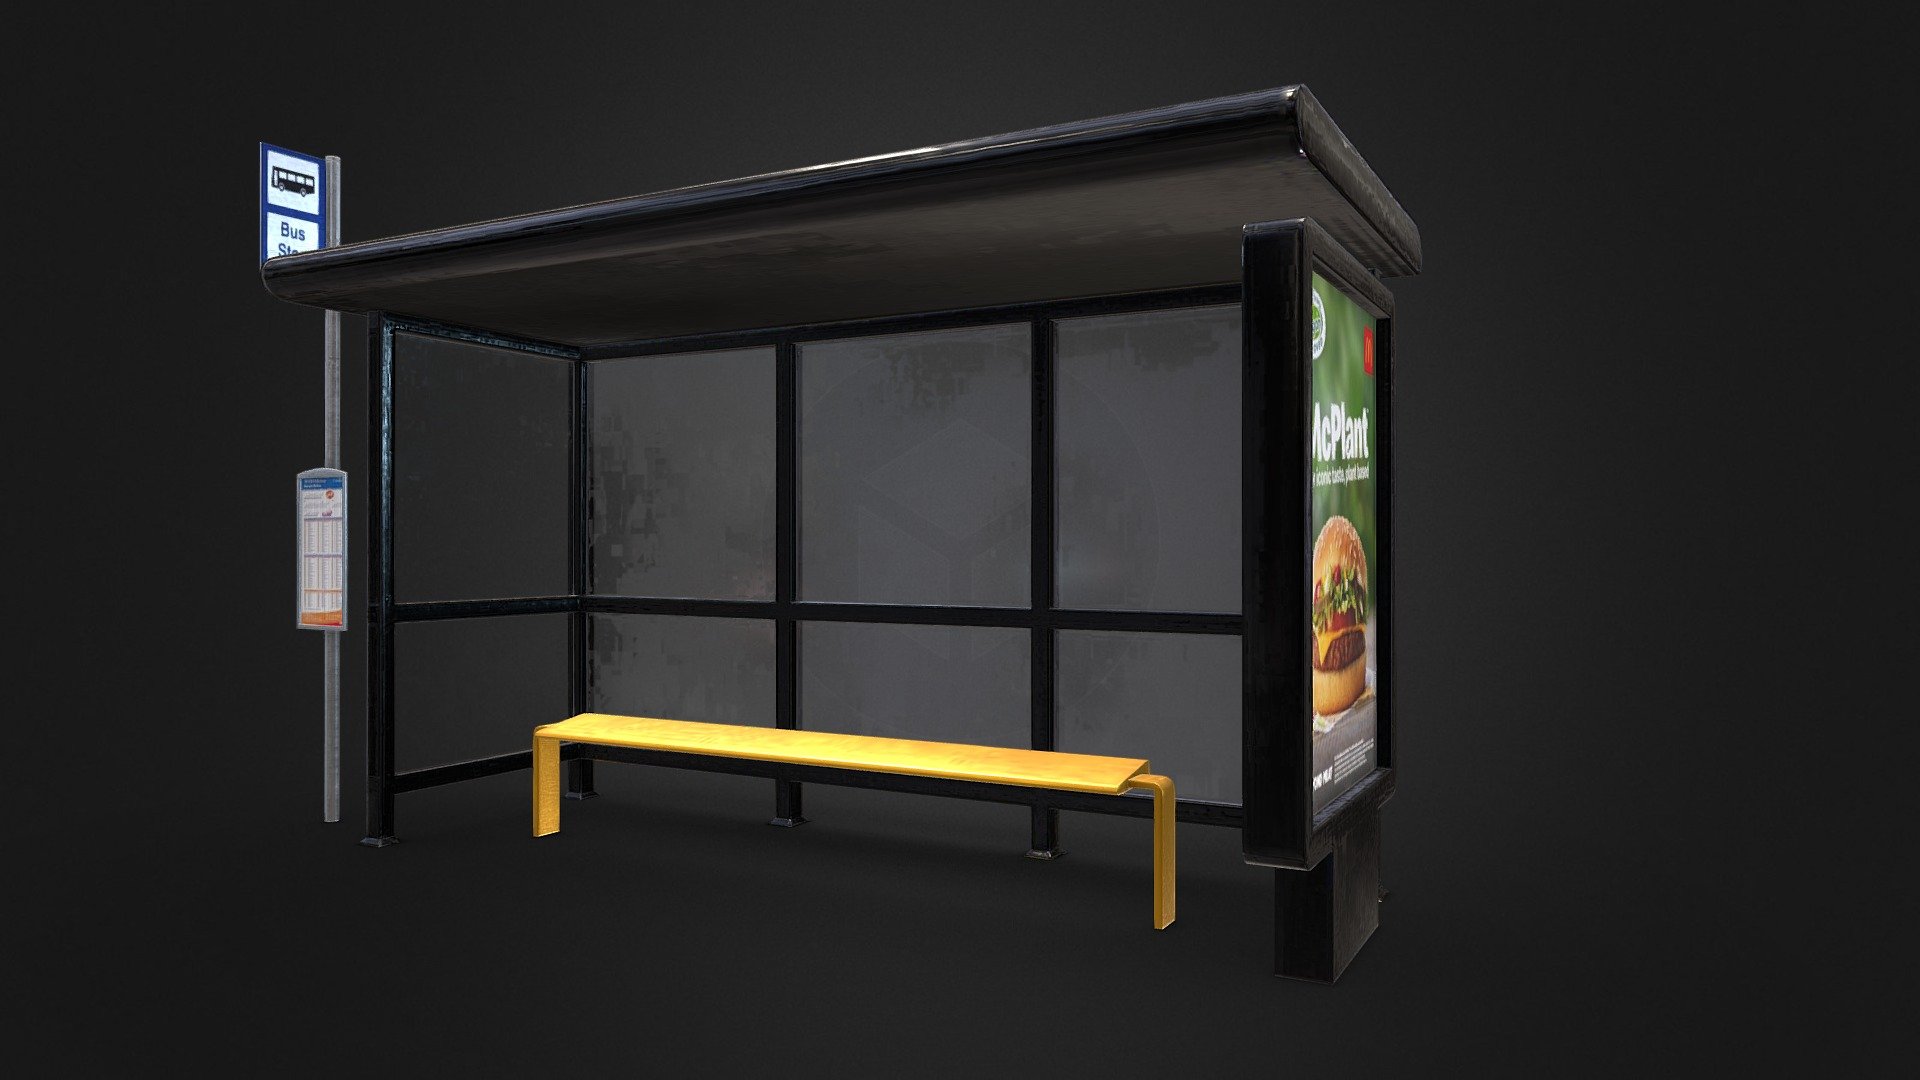 Standard UK style Bus Stop/ Shelter - UK Bus Shelter - 3D model by samhatesham 3d model